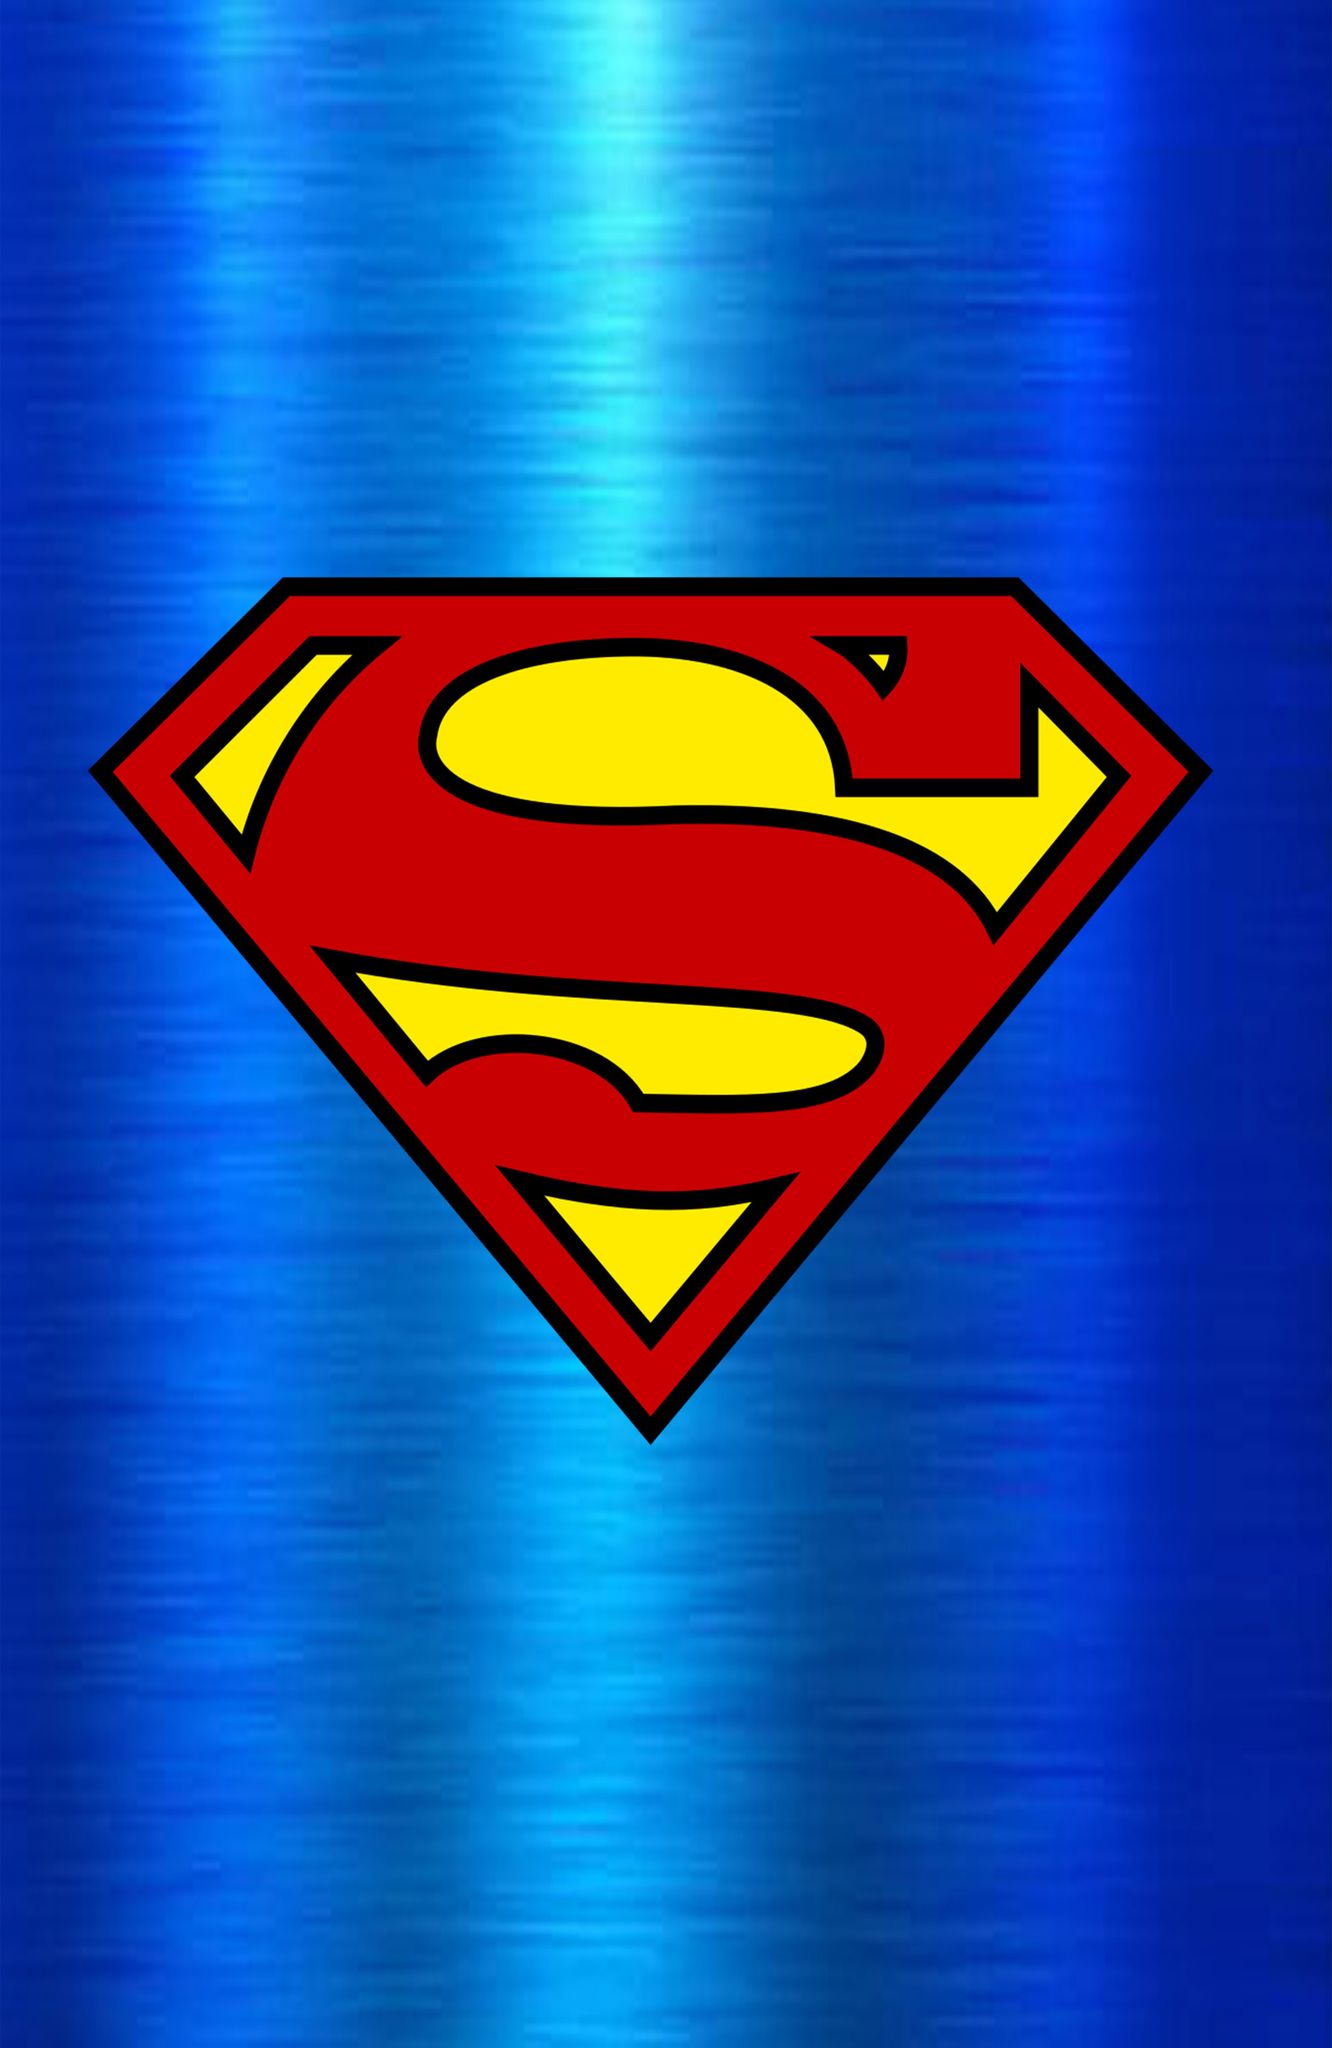 02/21/2023 SUPERMAN #1 BLUE FOIL LOGO EXCLUSIVE